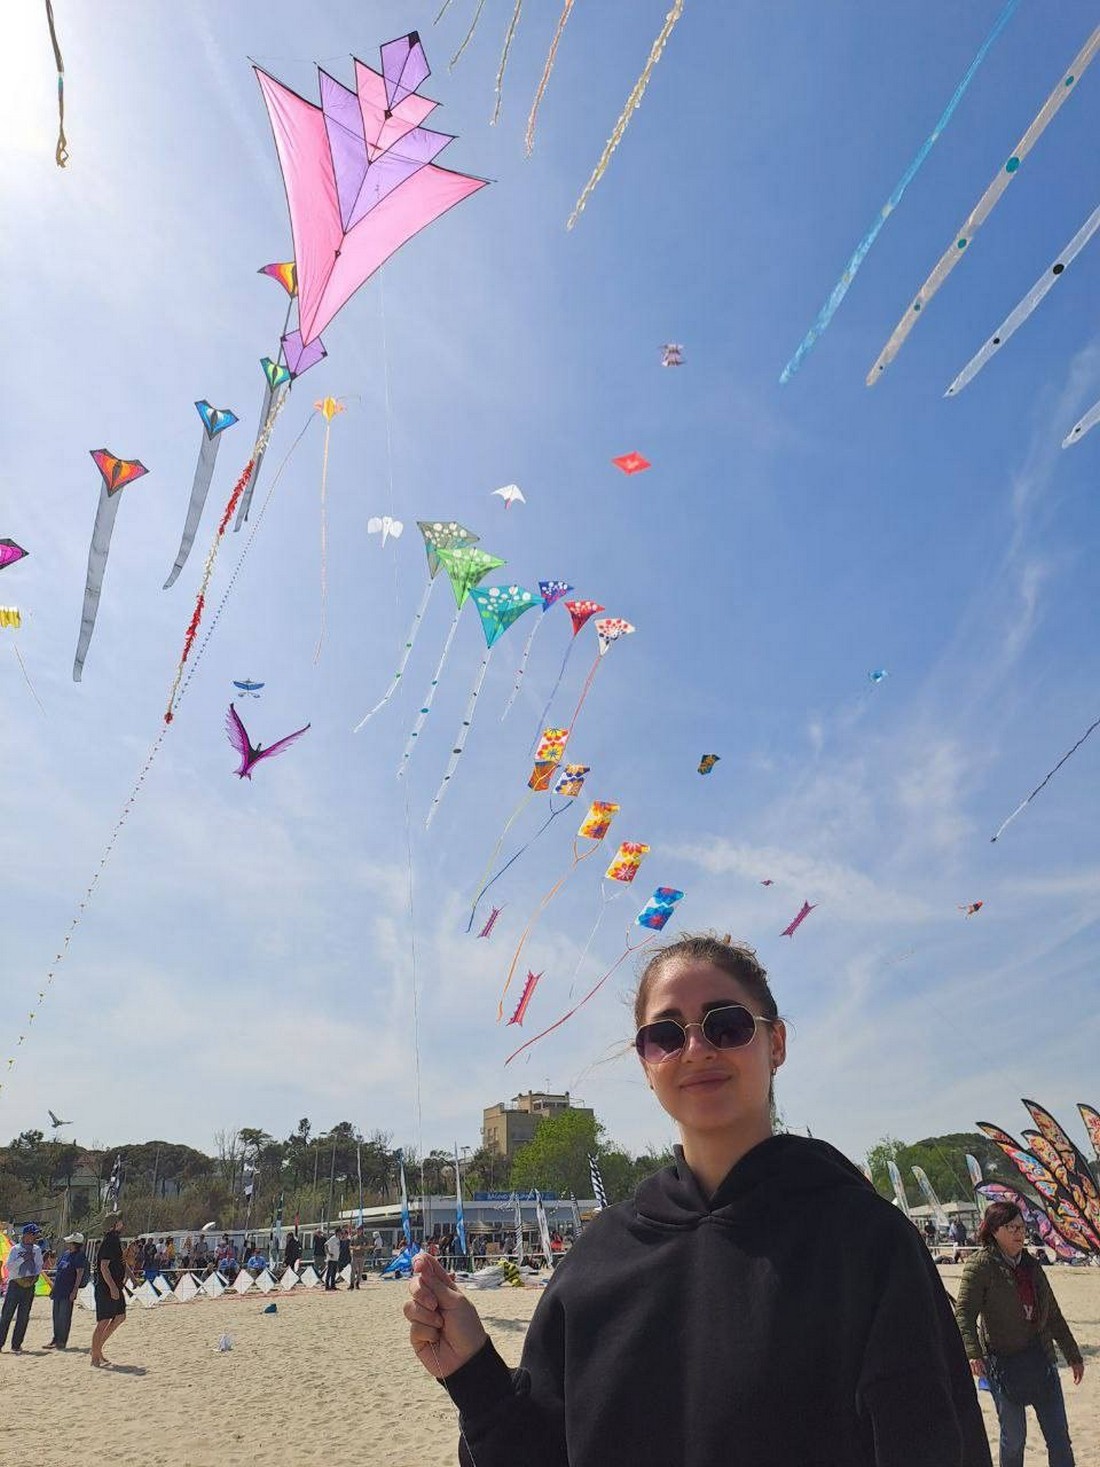 Мешканка Нікополя представила Україну на найбільшому міжнародному фестивалі повітряних зміїв світу 